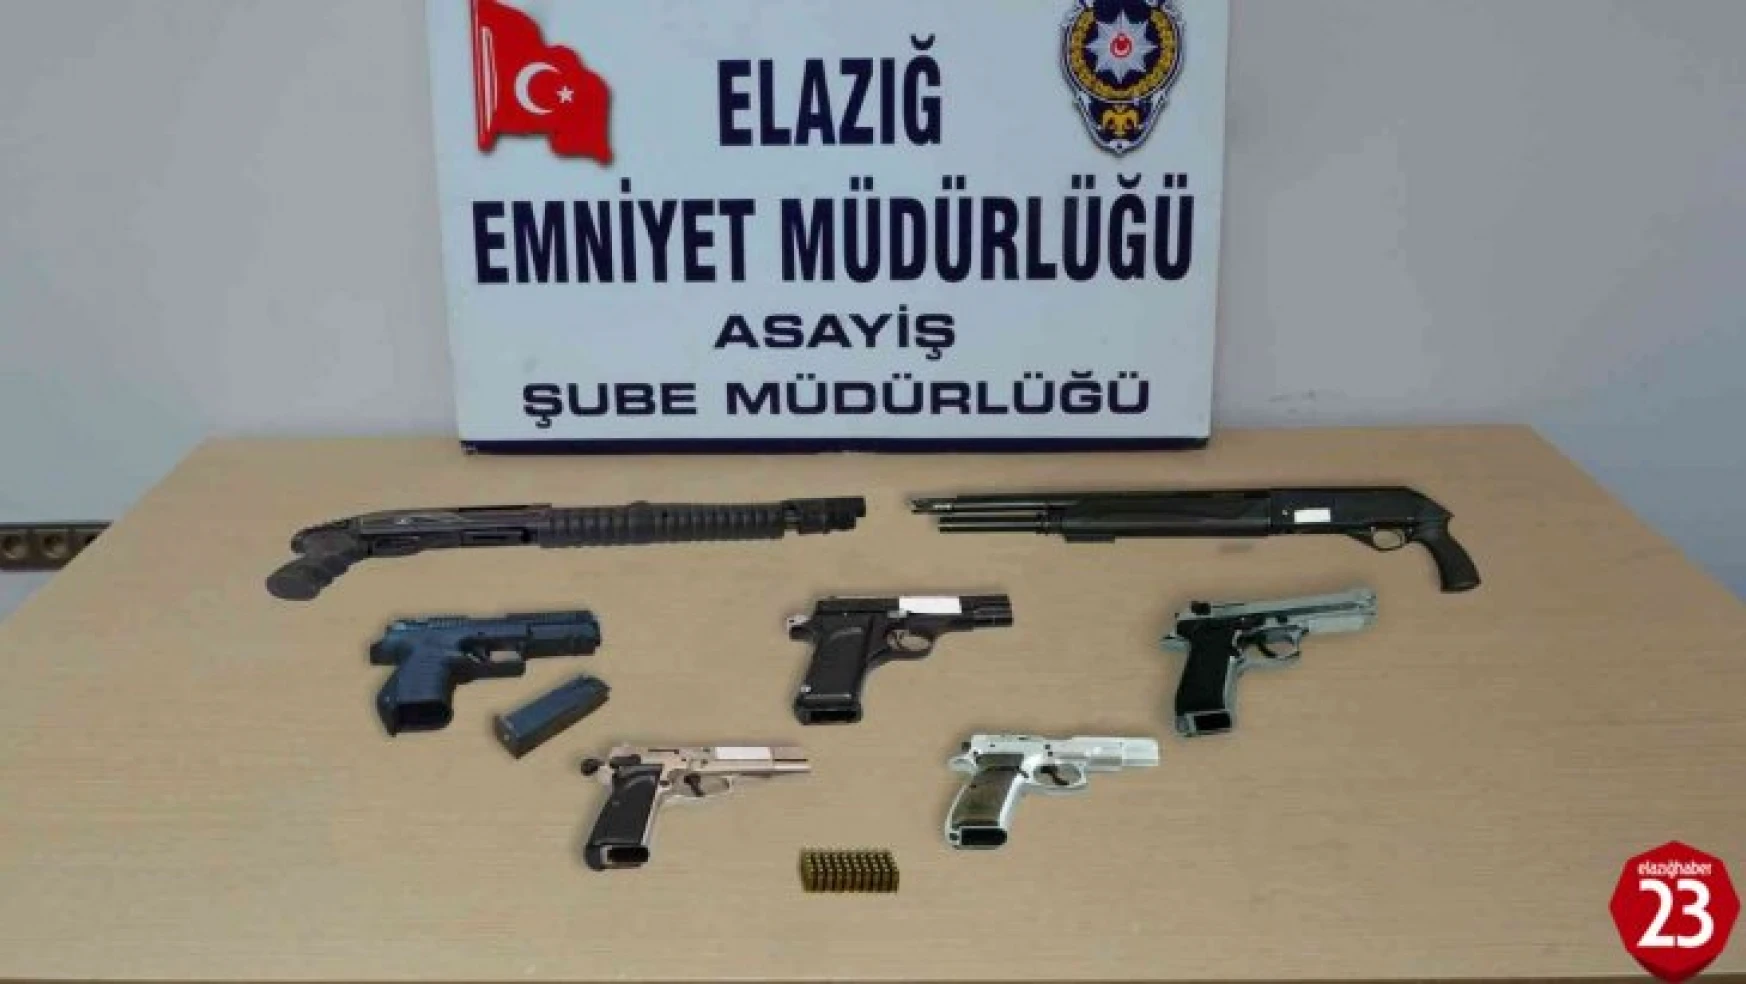 Elazığ'da asayiş ve şok uygulamaları: 19 kişi tutuklandı